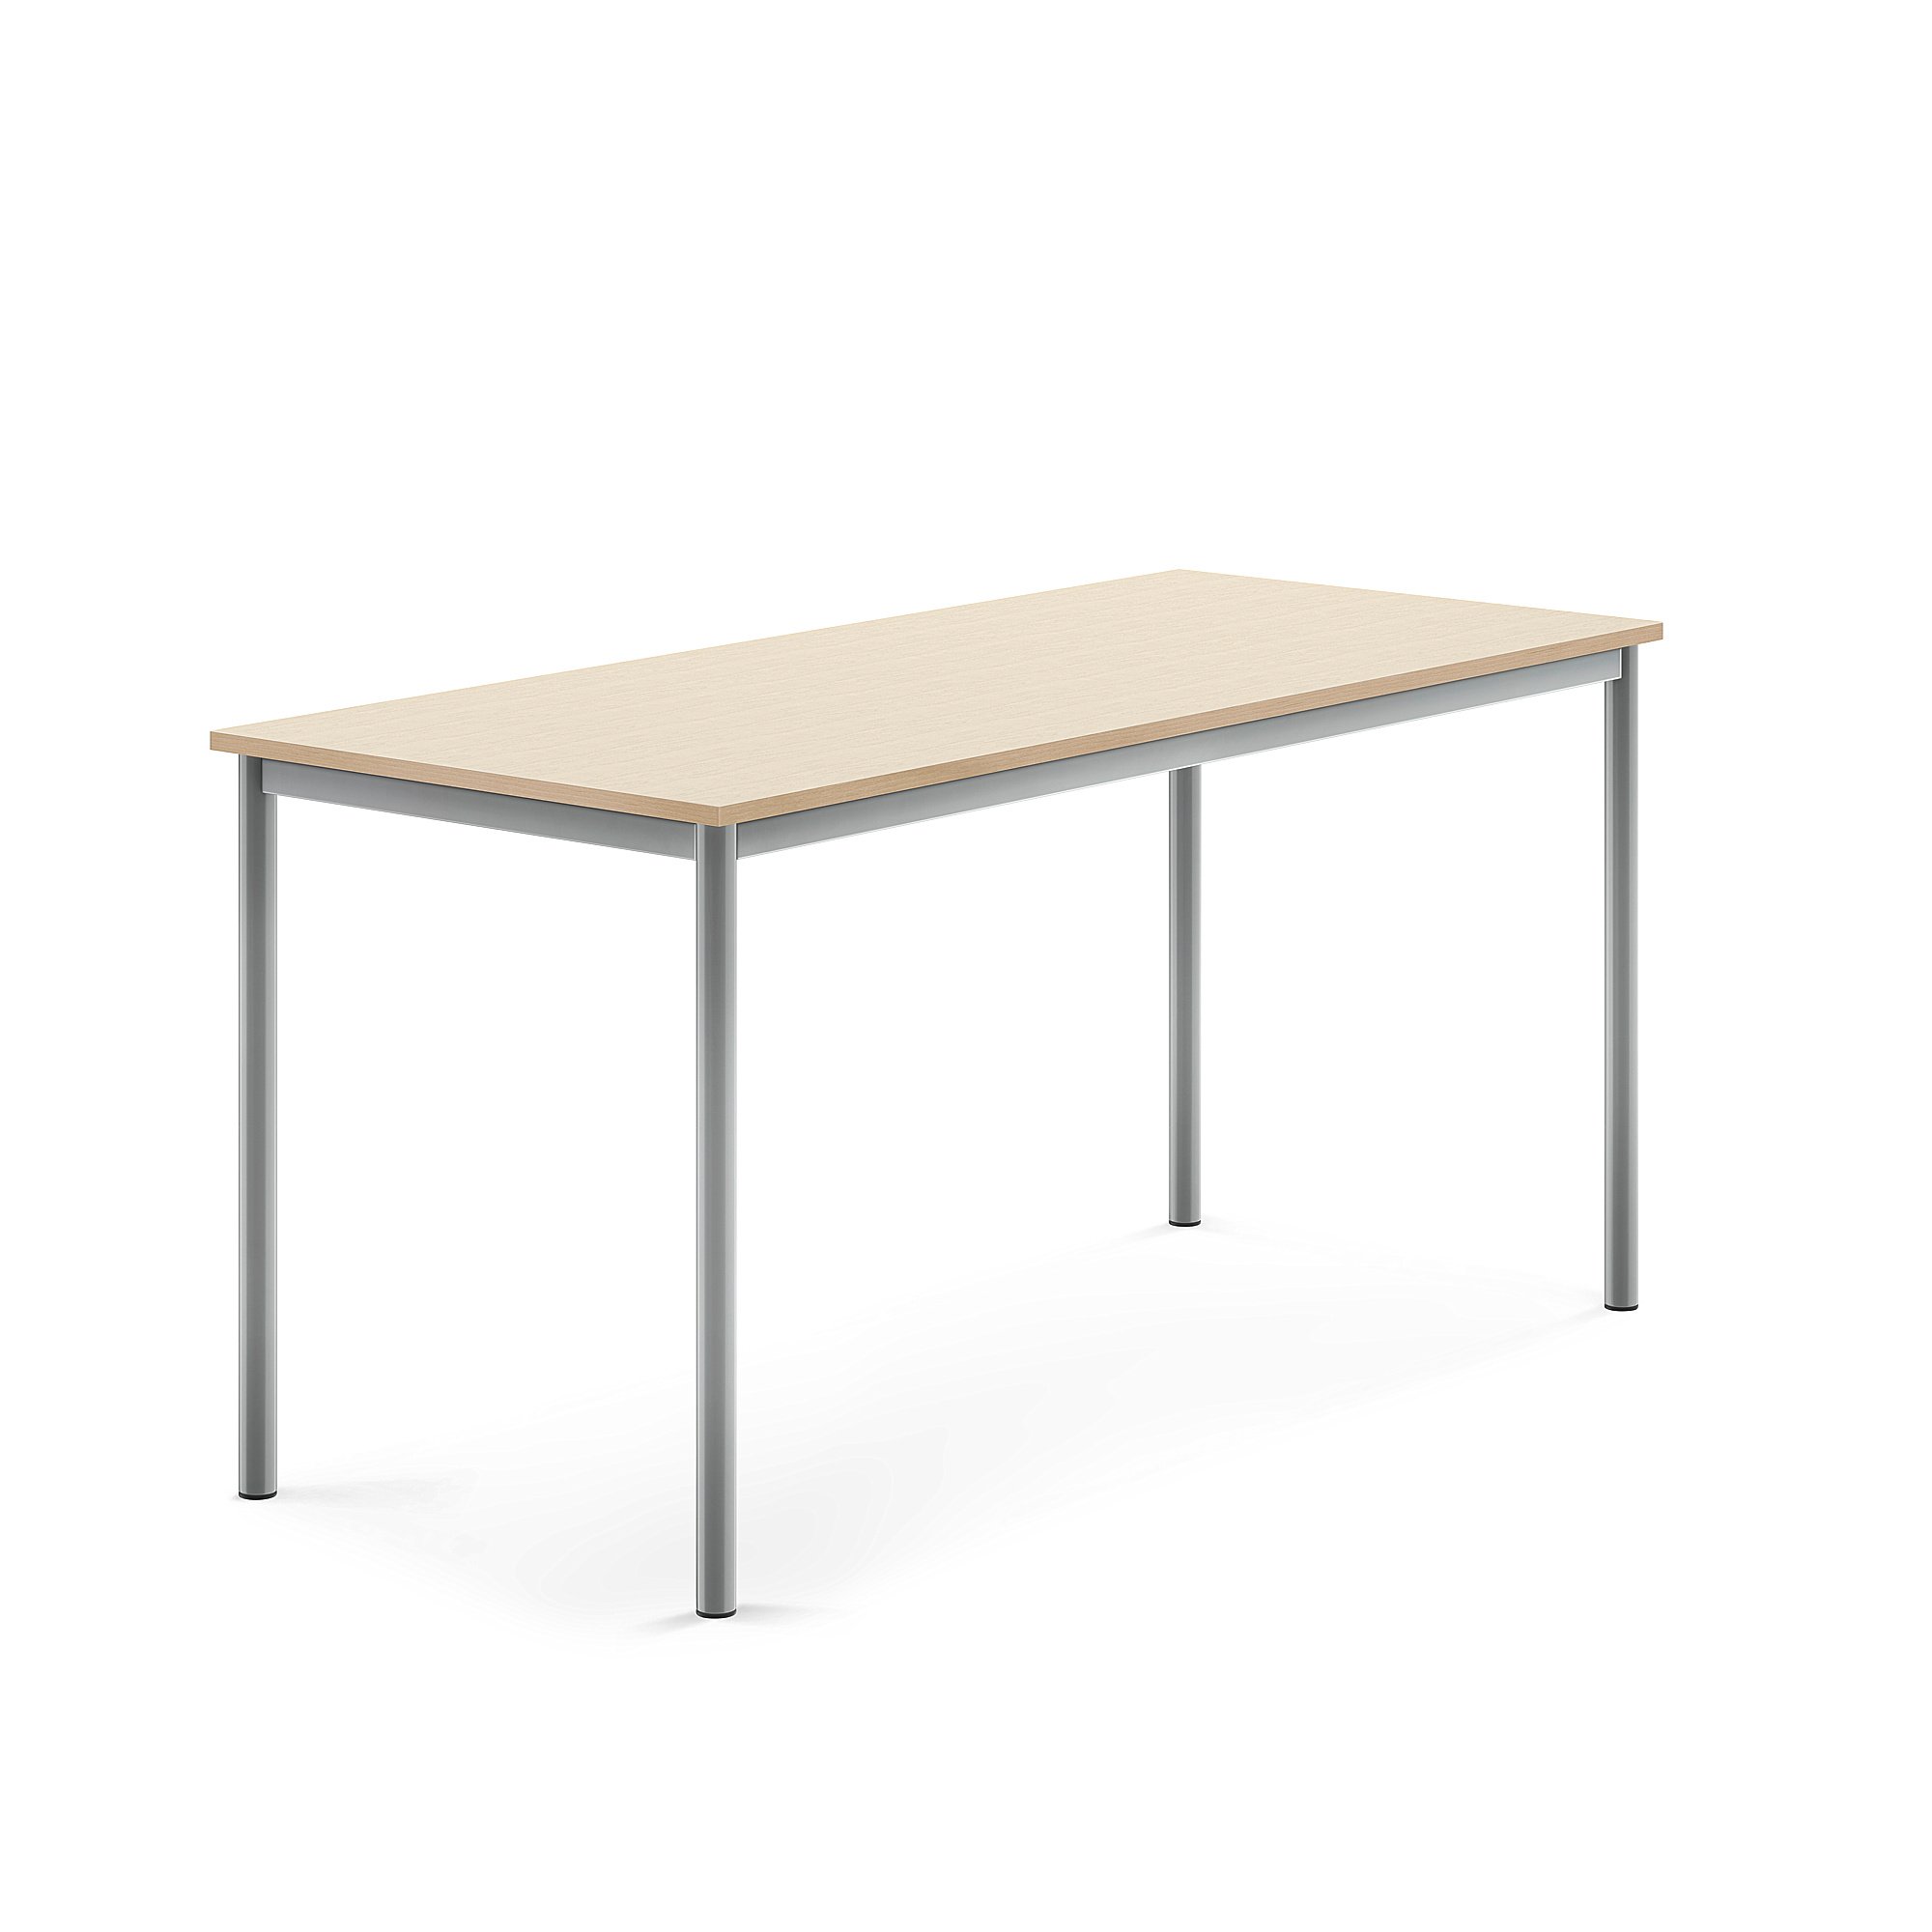 Stůl BORÅS, 1600x700x760 mm, stříbrné nohy, HPL deska, bříza